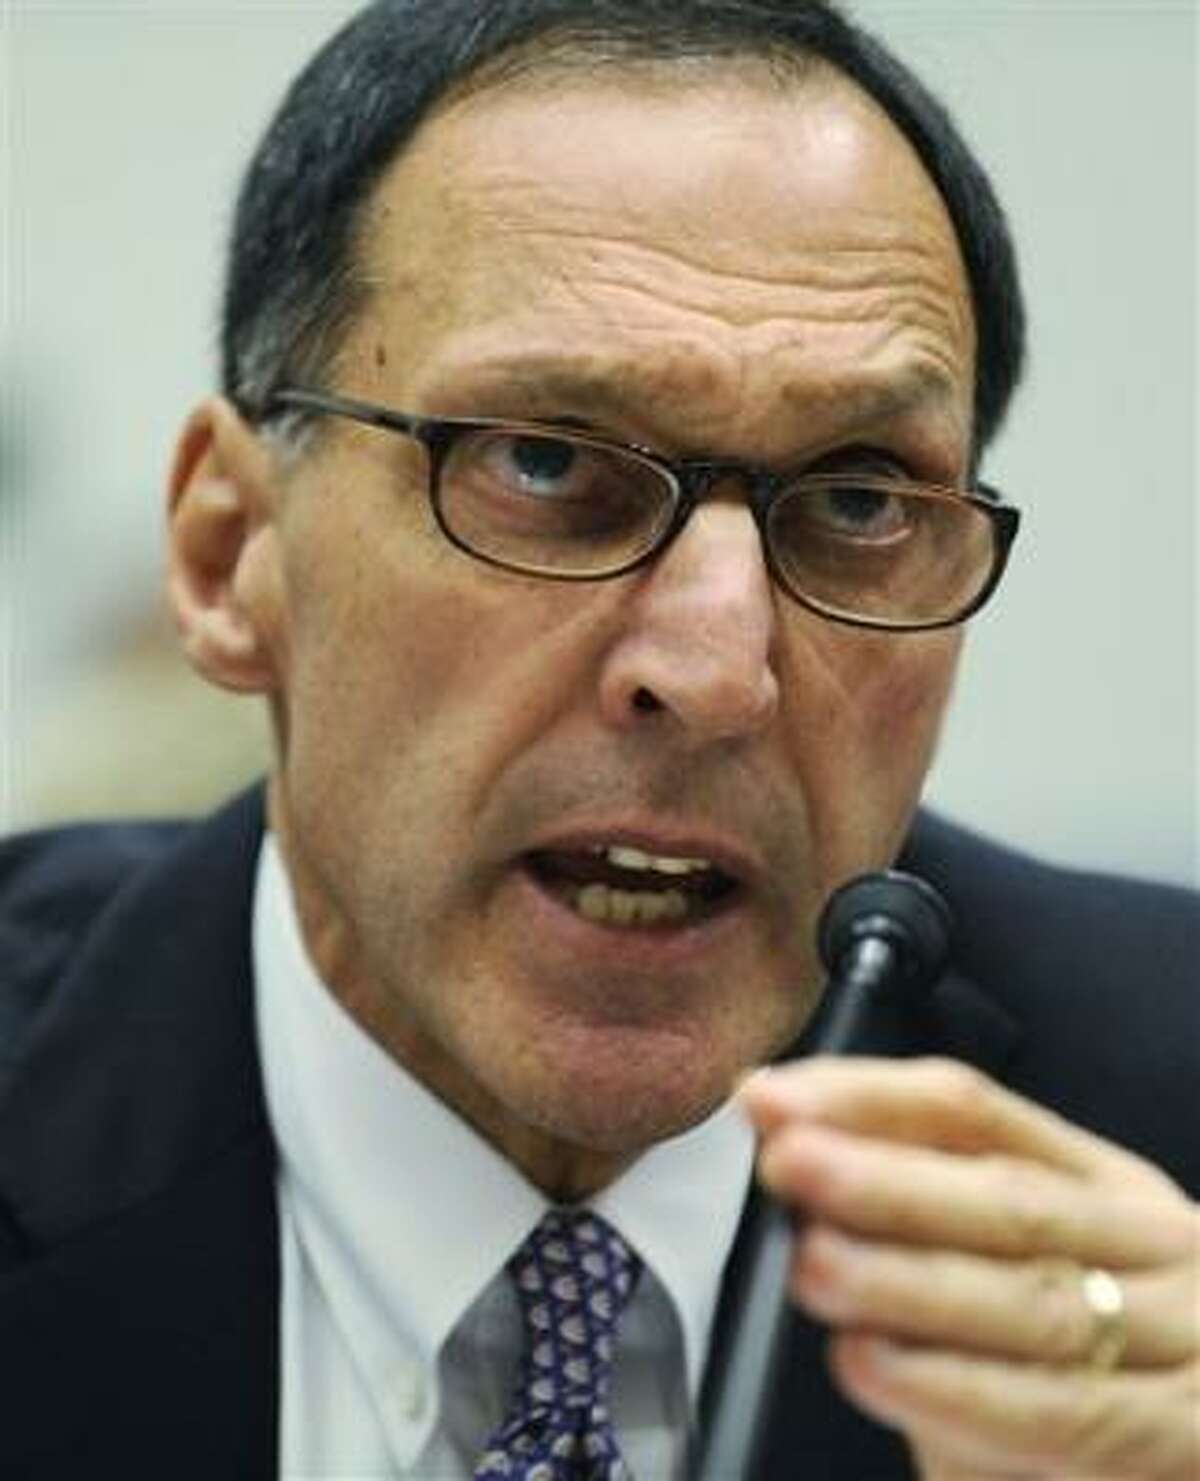 Foto del 6 de octubre del 2008 del director general de Lehman Brothers Holdings Inc. Richard S. Fuld Jr., declarando ante el Comité de Supervisión y Gobierno de la Cámara de Representantes en el Capitoio de Washington, que volvió a declarar ante los legisladores el 20 de abril del 2010.